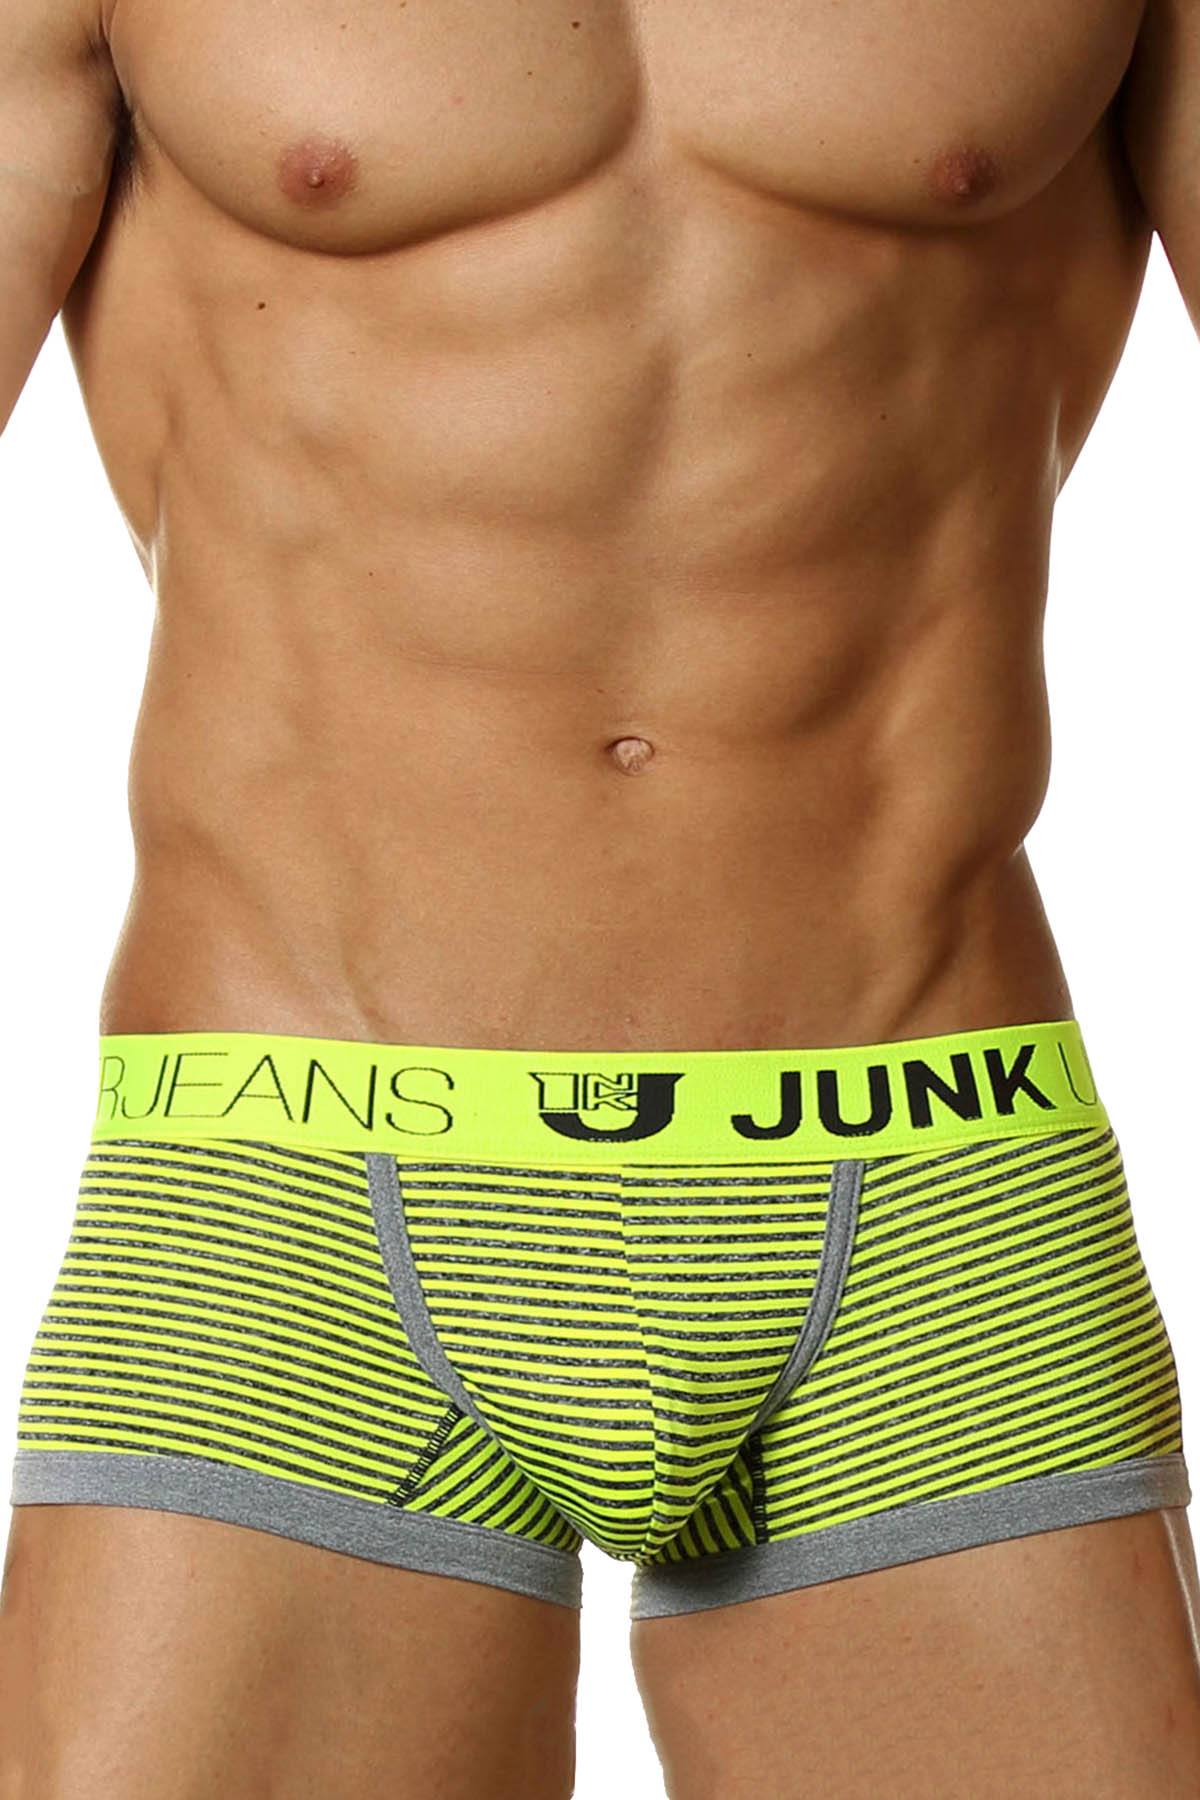 Junk Underjeans Neon-Yellow Stellar Trunk